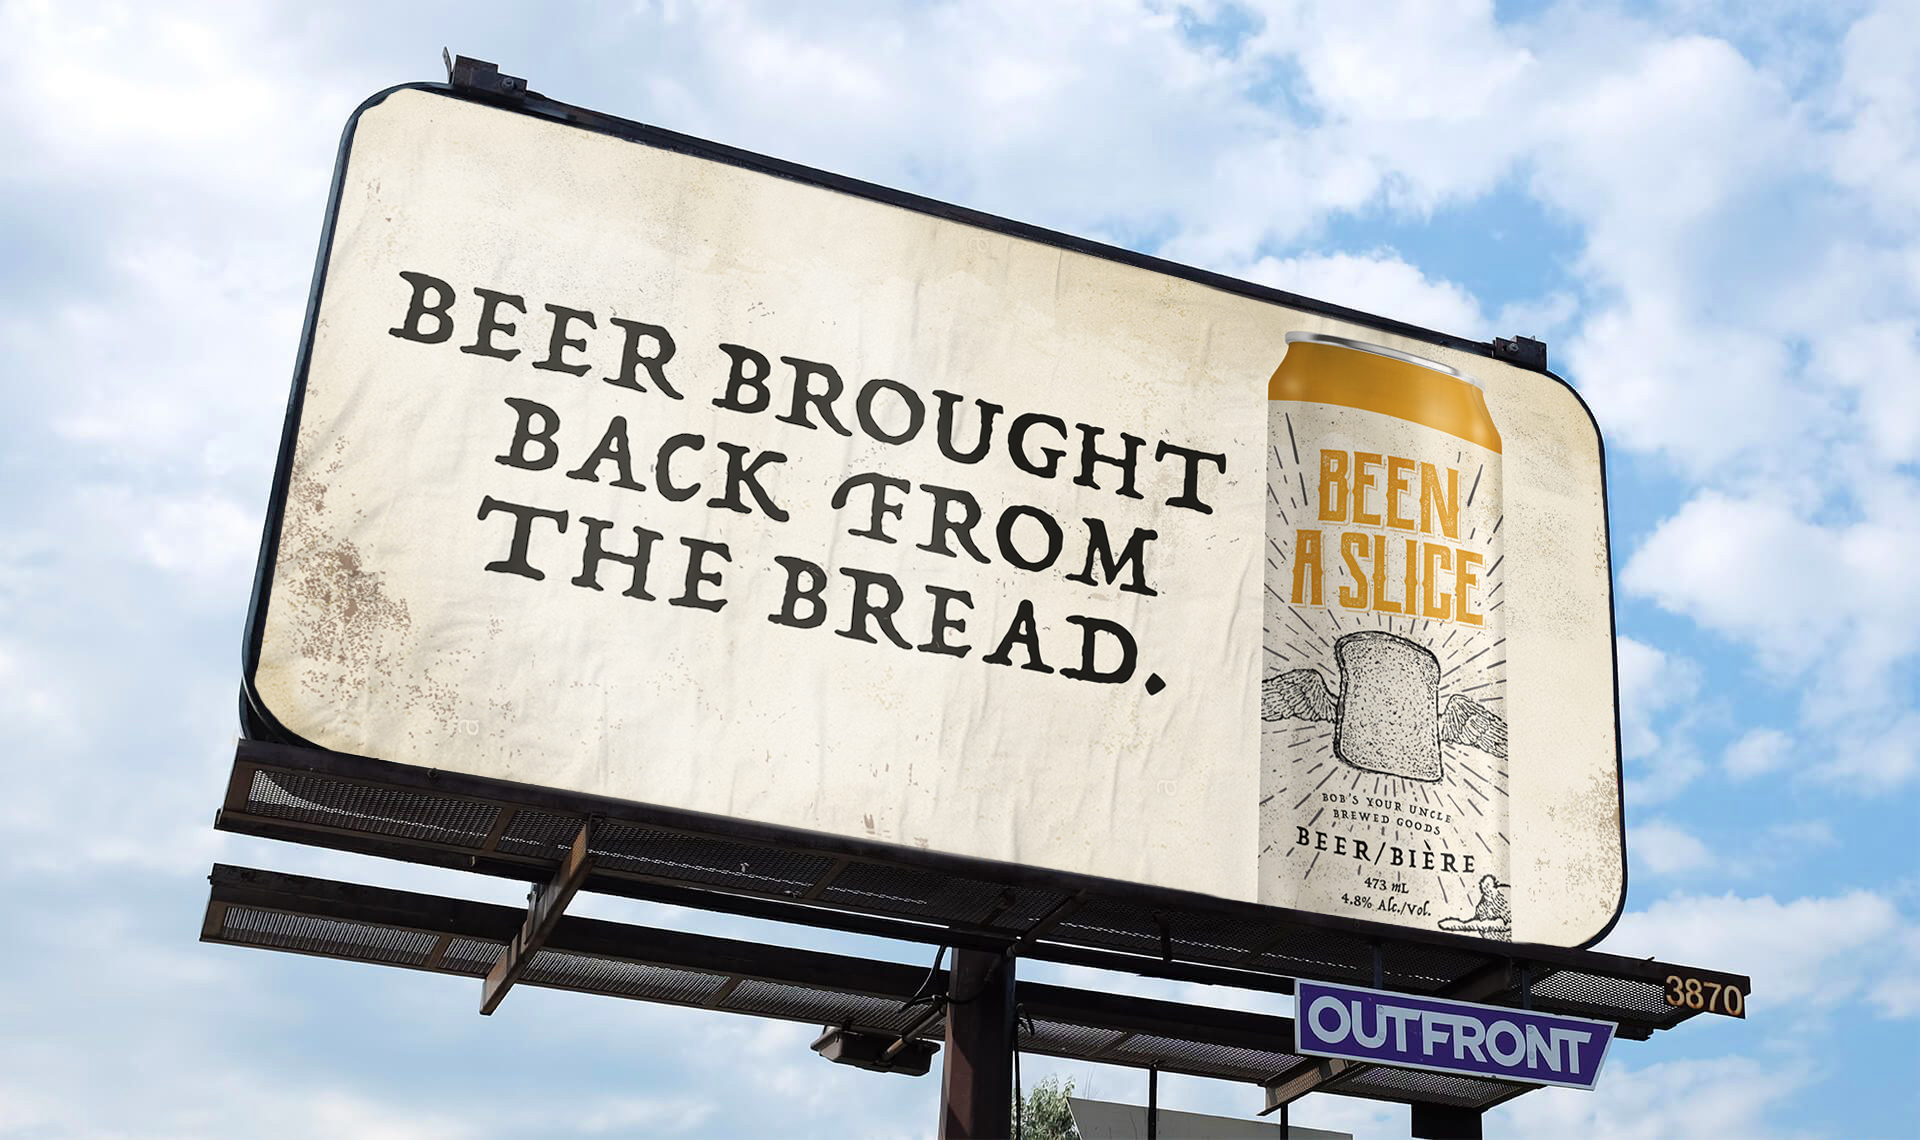 "Been a beer" billboard